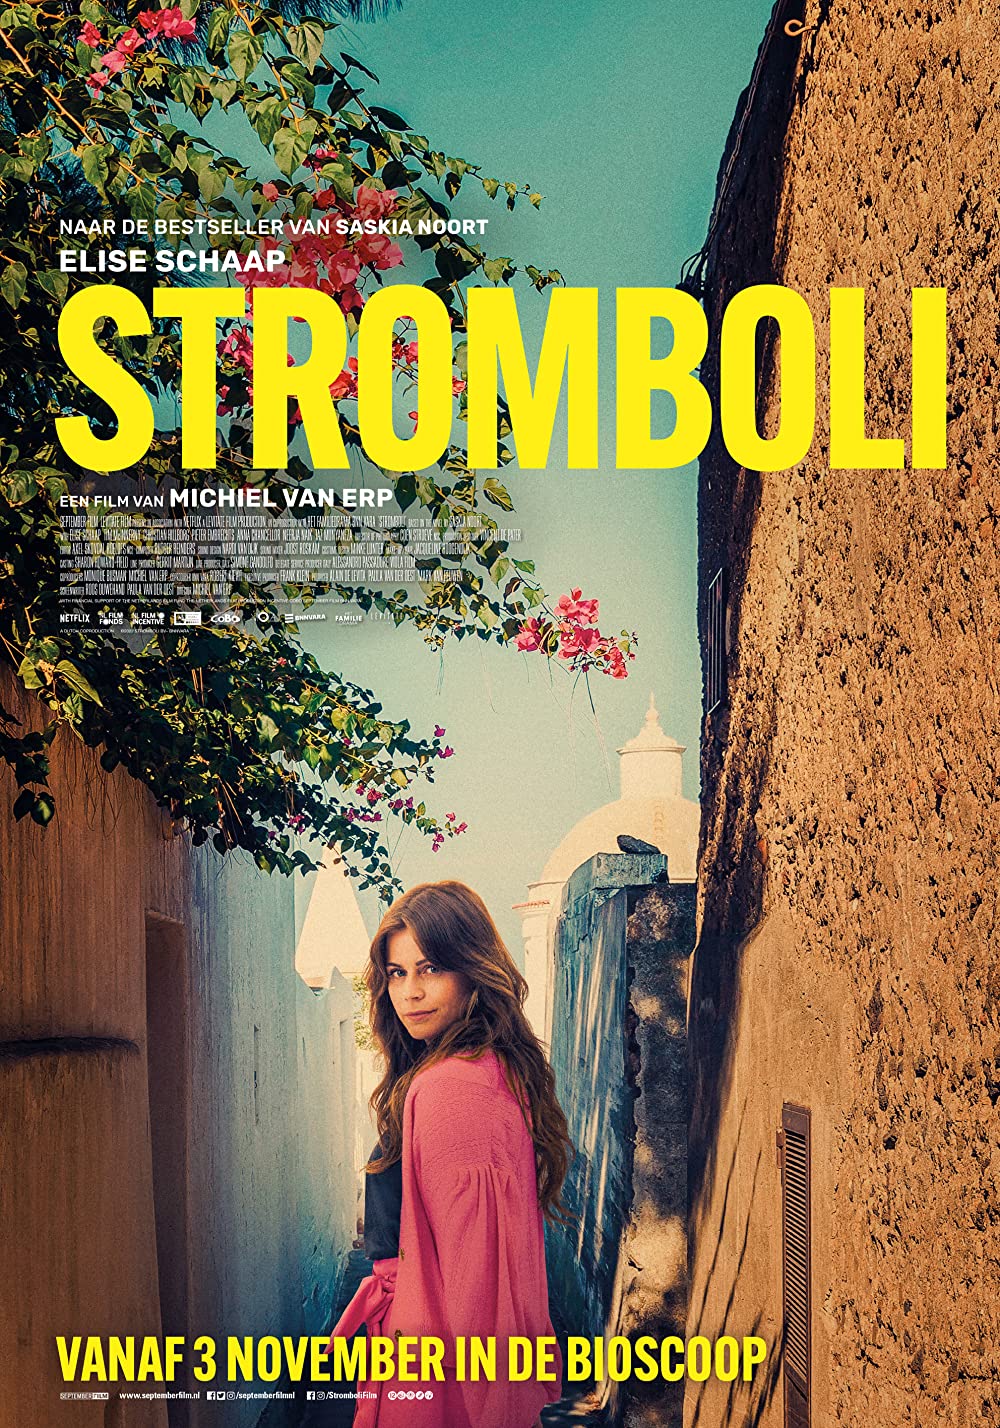 مشاهدة فيلم Stromboli 2022 مترجم اون لاين